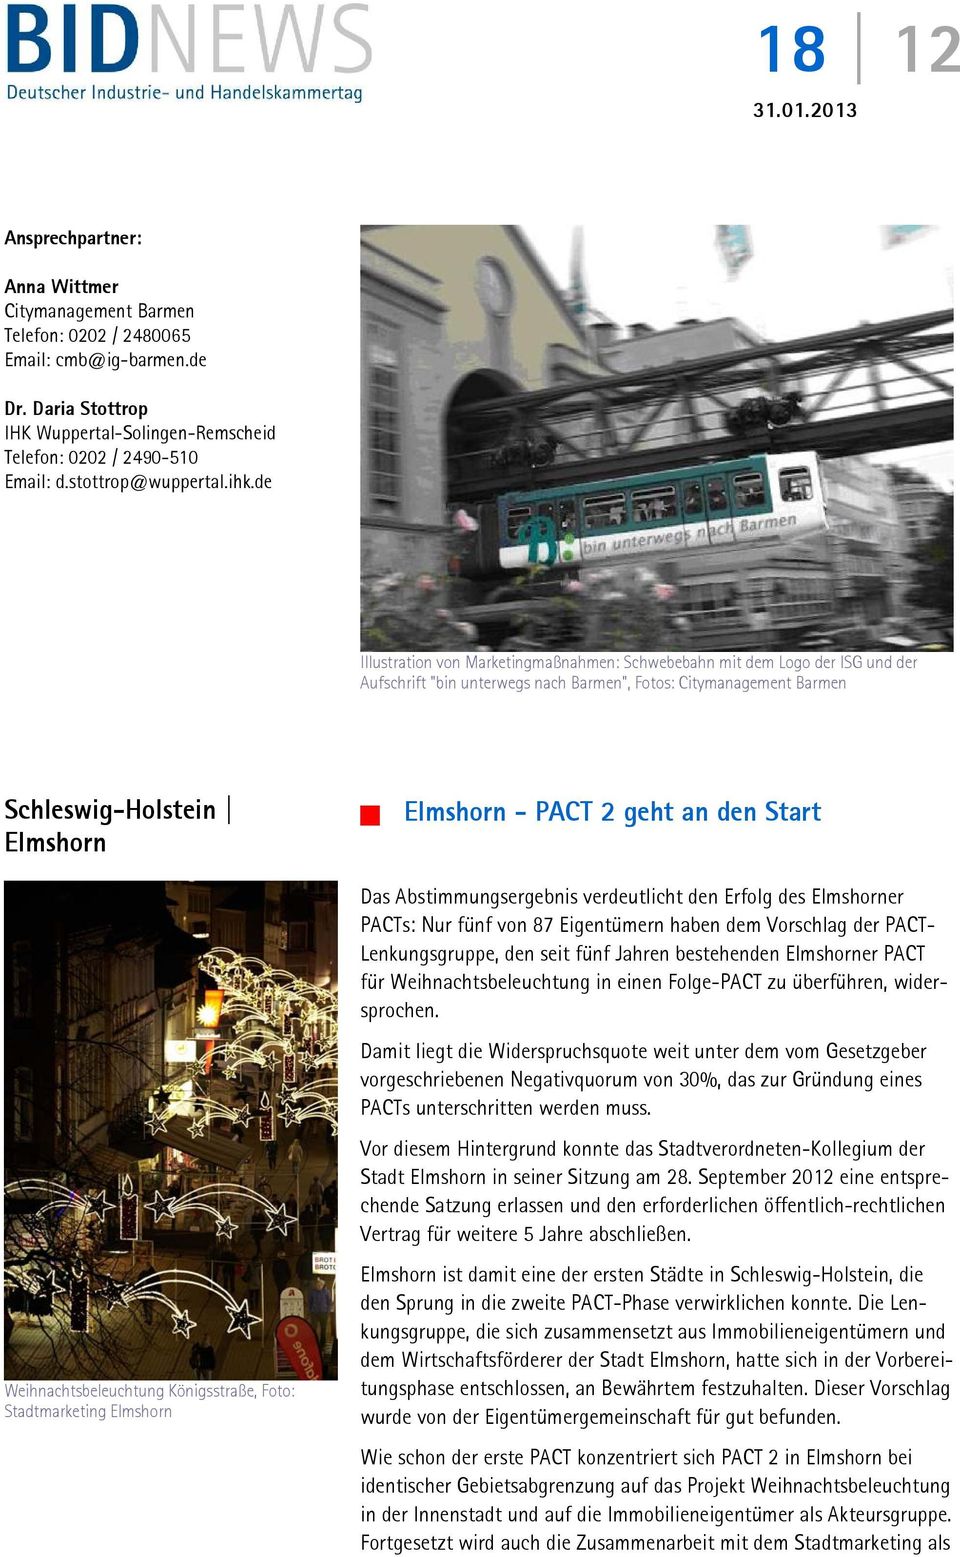 Königsstraße, Foto: Stadtmarketing Elmshorn Elmshorn - PACT 2 geht an den Start Das Abstimmungsergebnis verdeutlicht den Erfolg des Elmshorner PACTs: Nur fünf von 87 Eigentümern haben dem Vorschlag